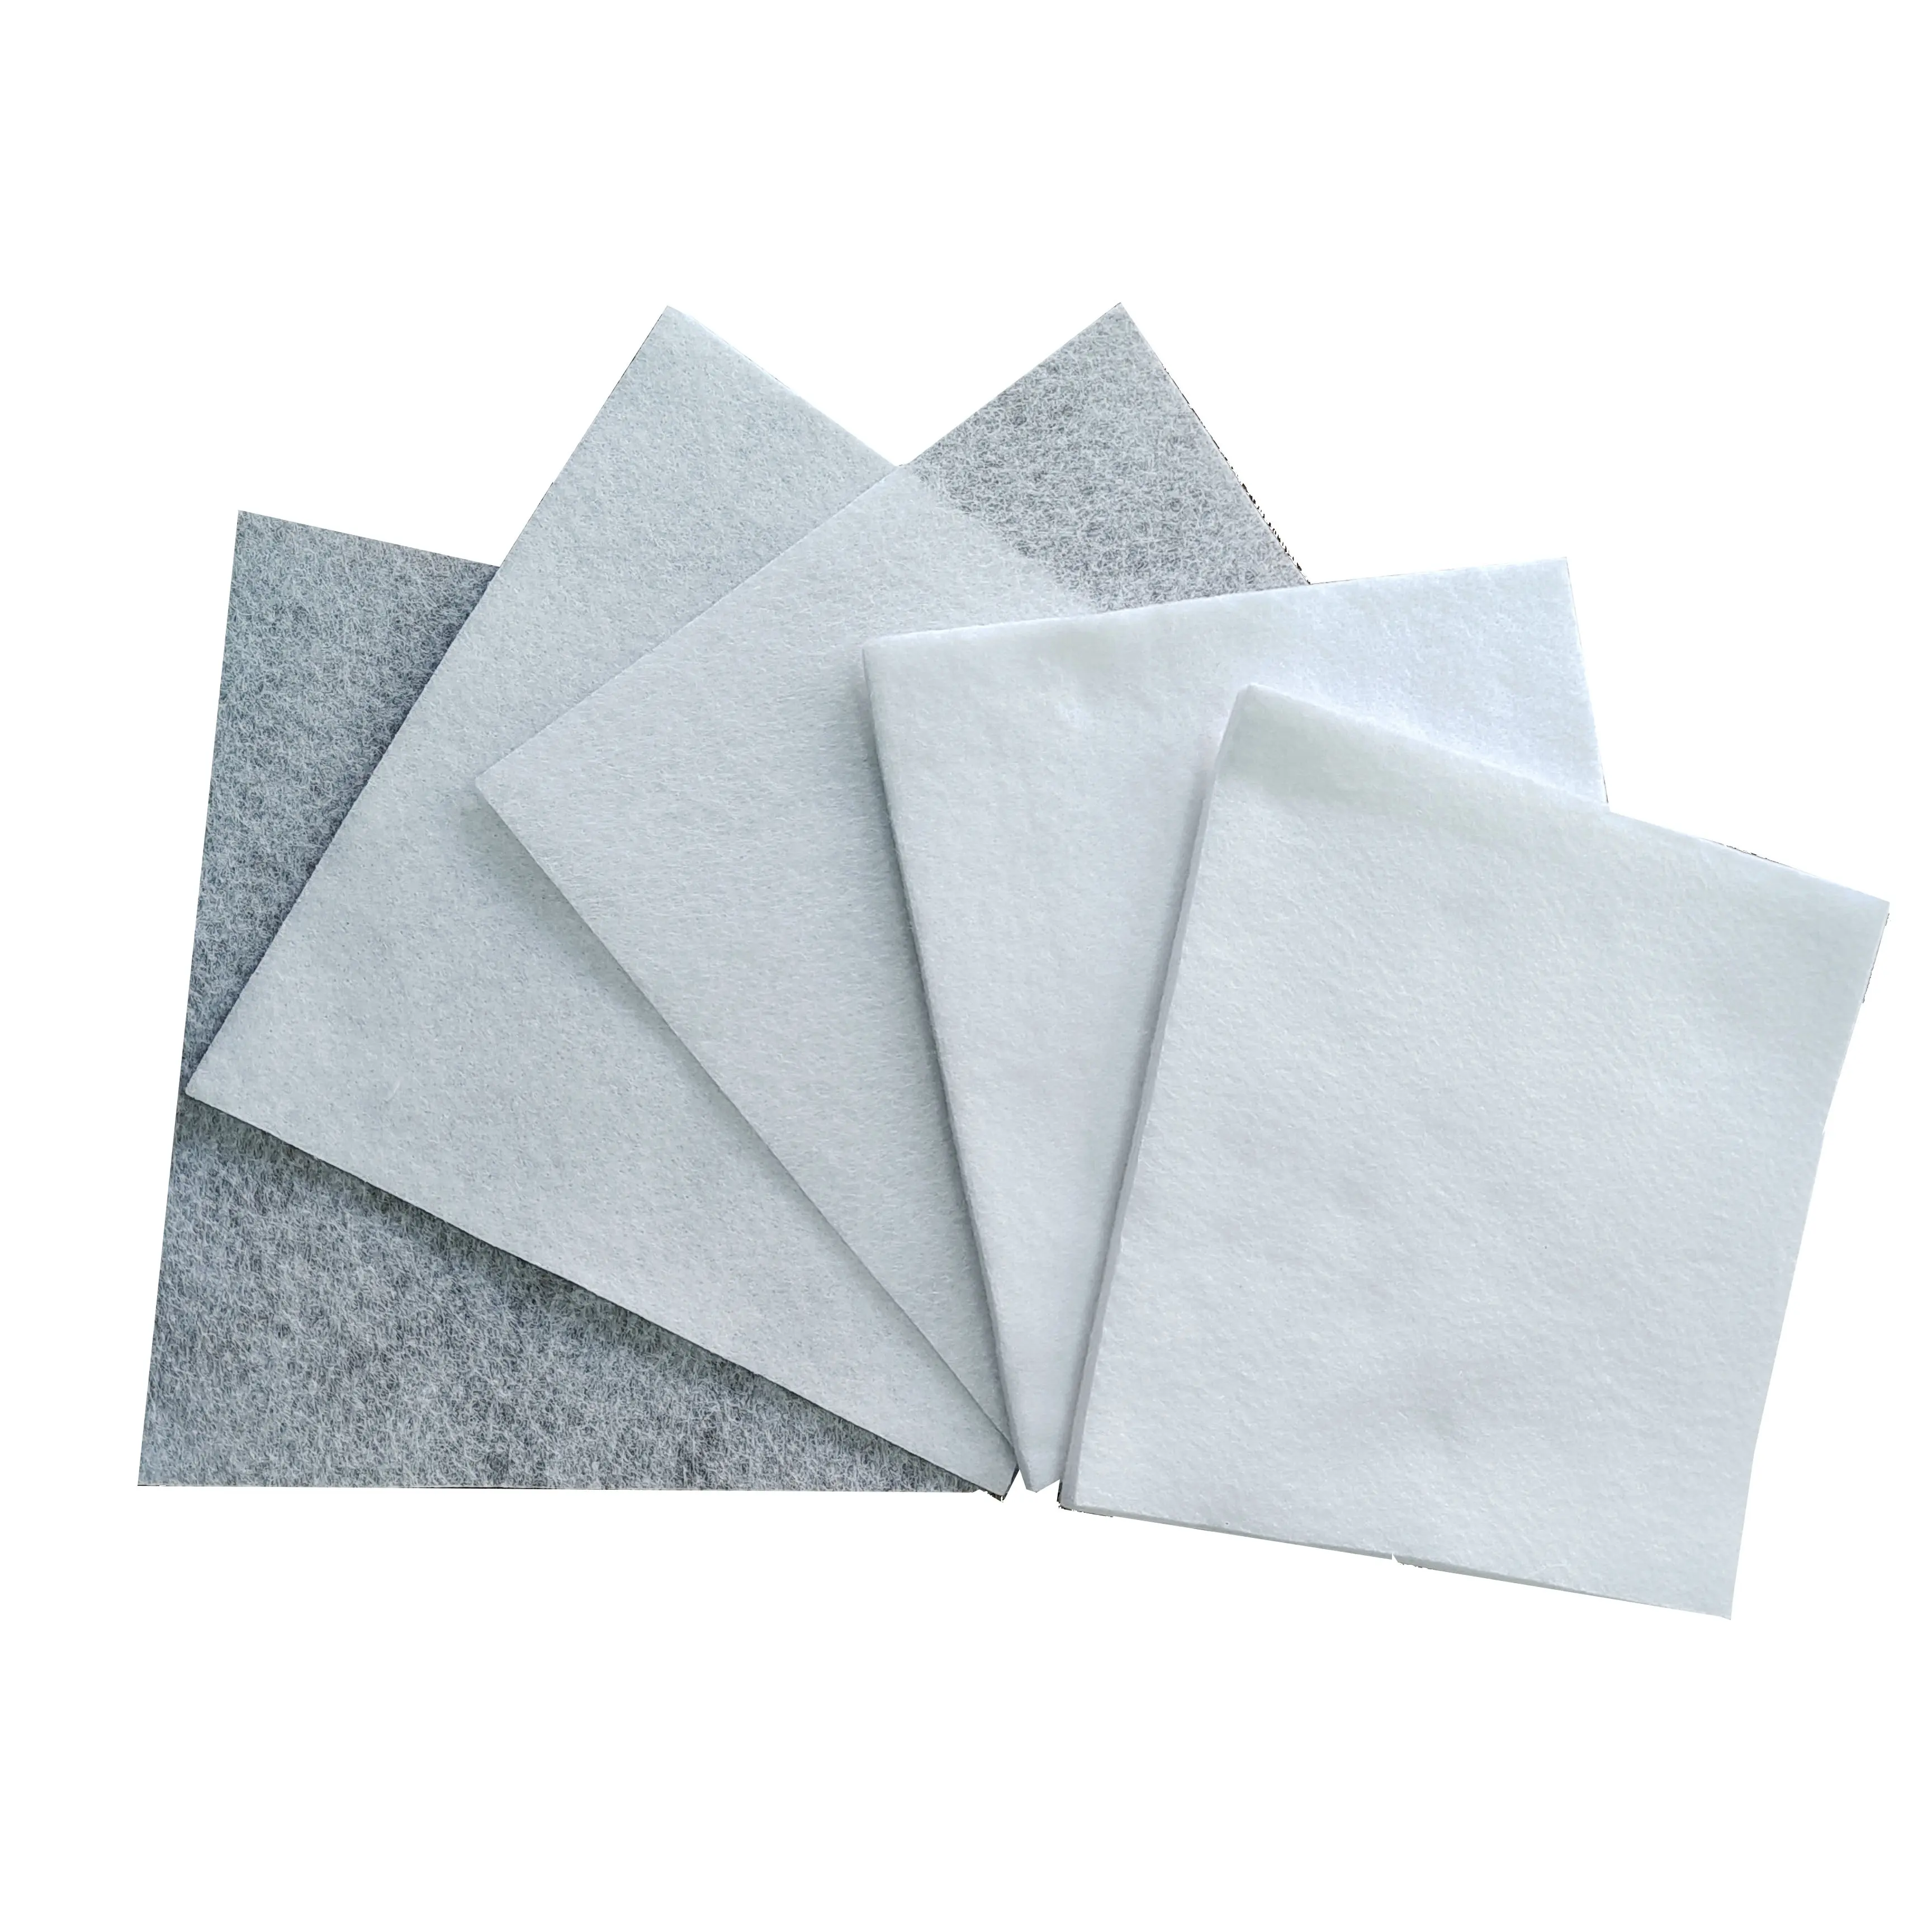 綿100% 超厚手綿高速吸収綿針白不織布衛生使用素材